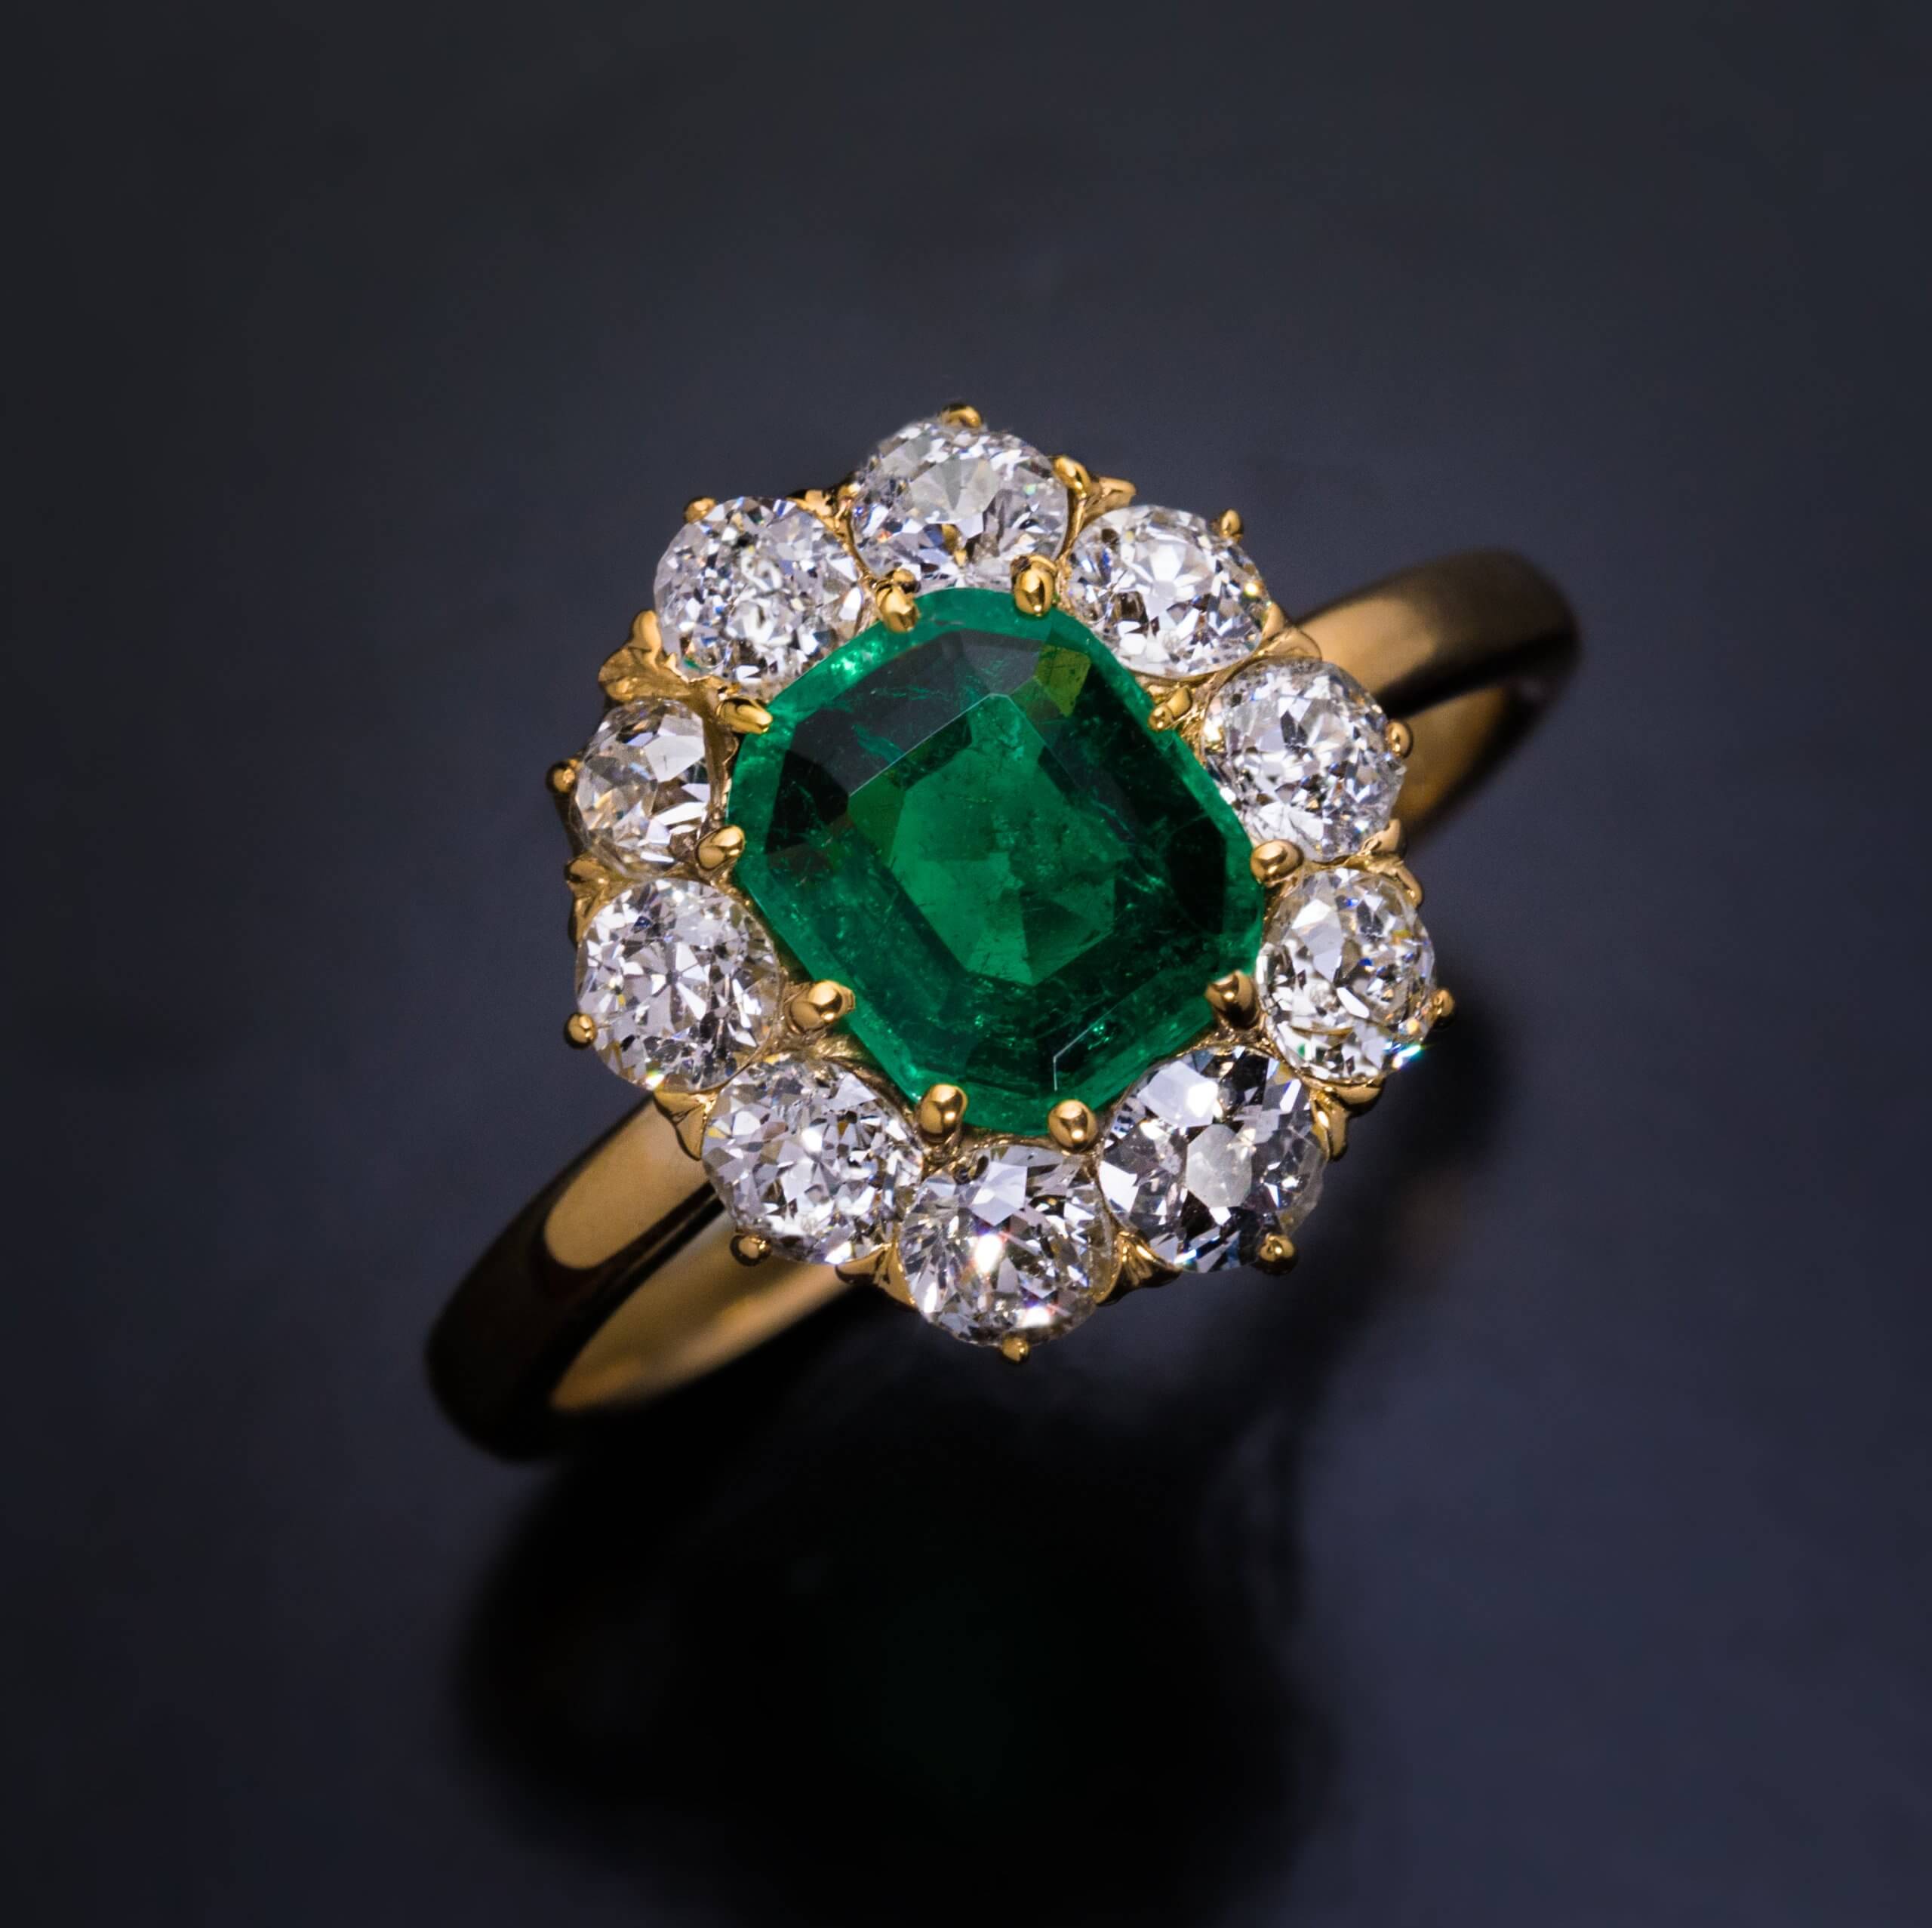 Small Antique Emerald Diamond Engagement Ring Ref: 175498 - Antique ...